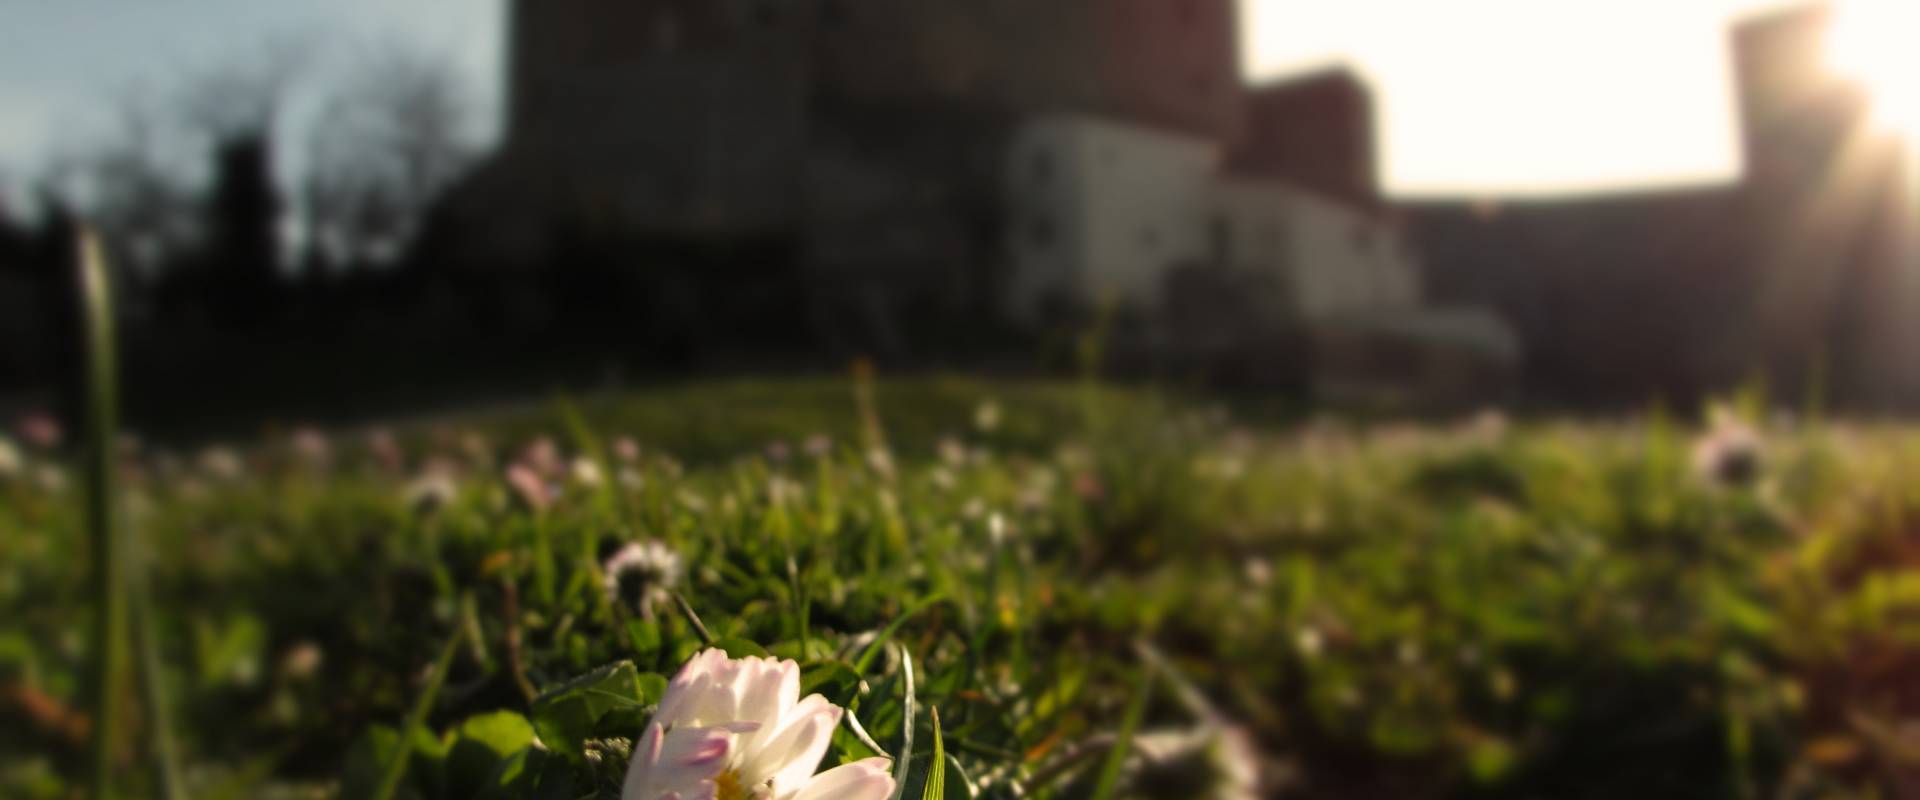 La Rocca e la sua primavera photo by LaraLally19